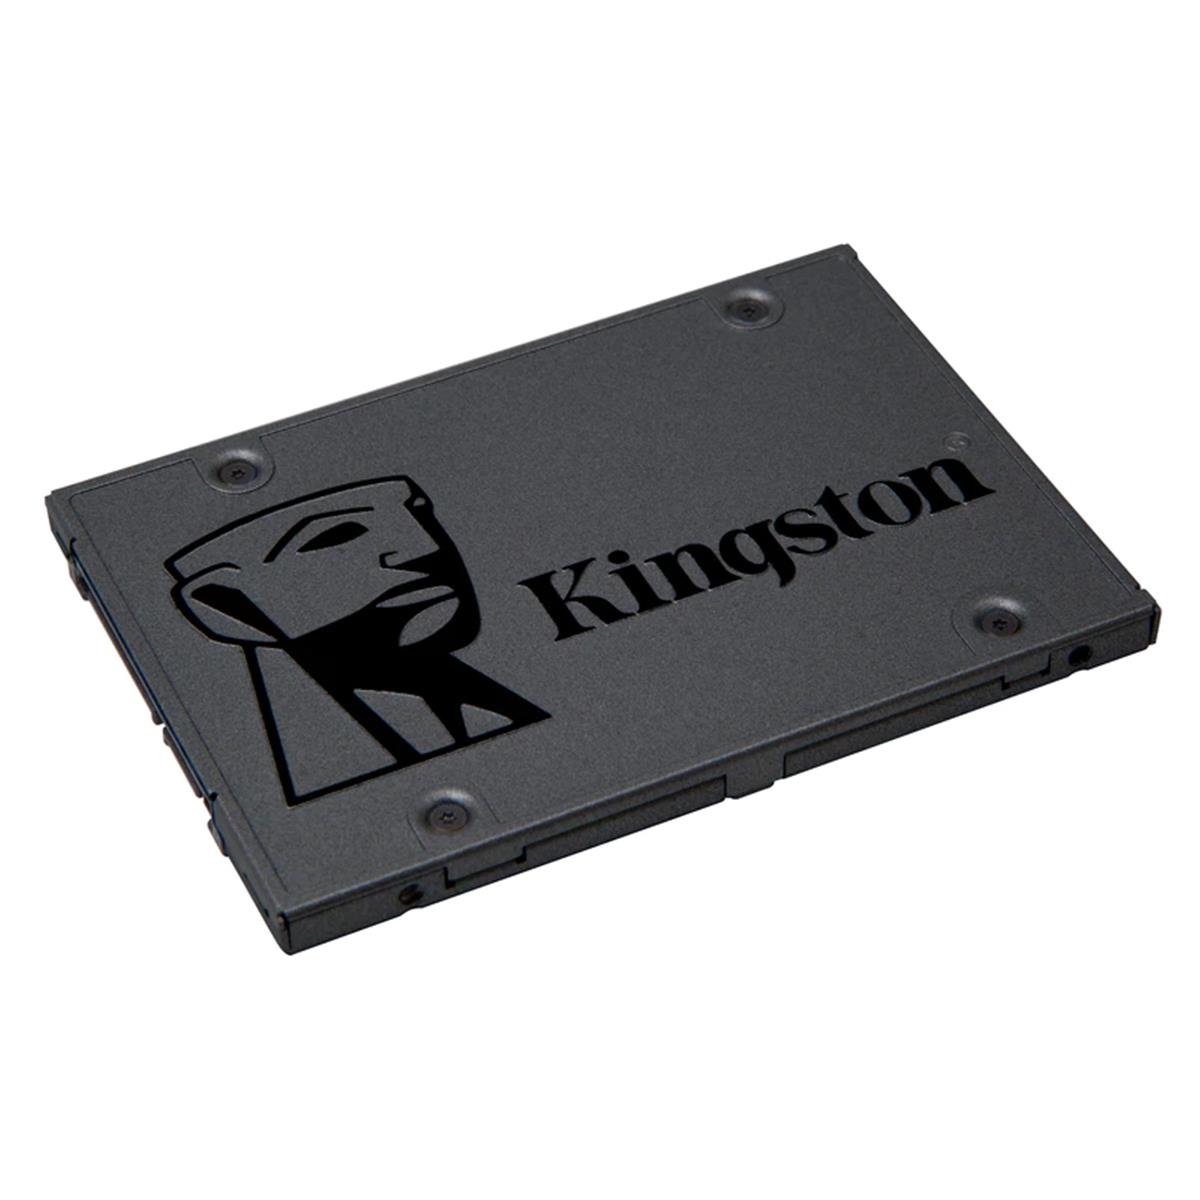 SSD 960 GB KINGSTON SA400S37/960G - SATA III